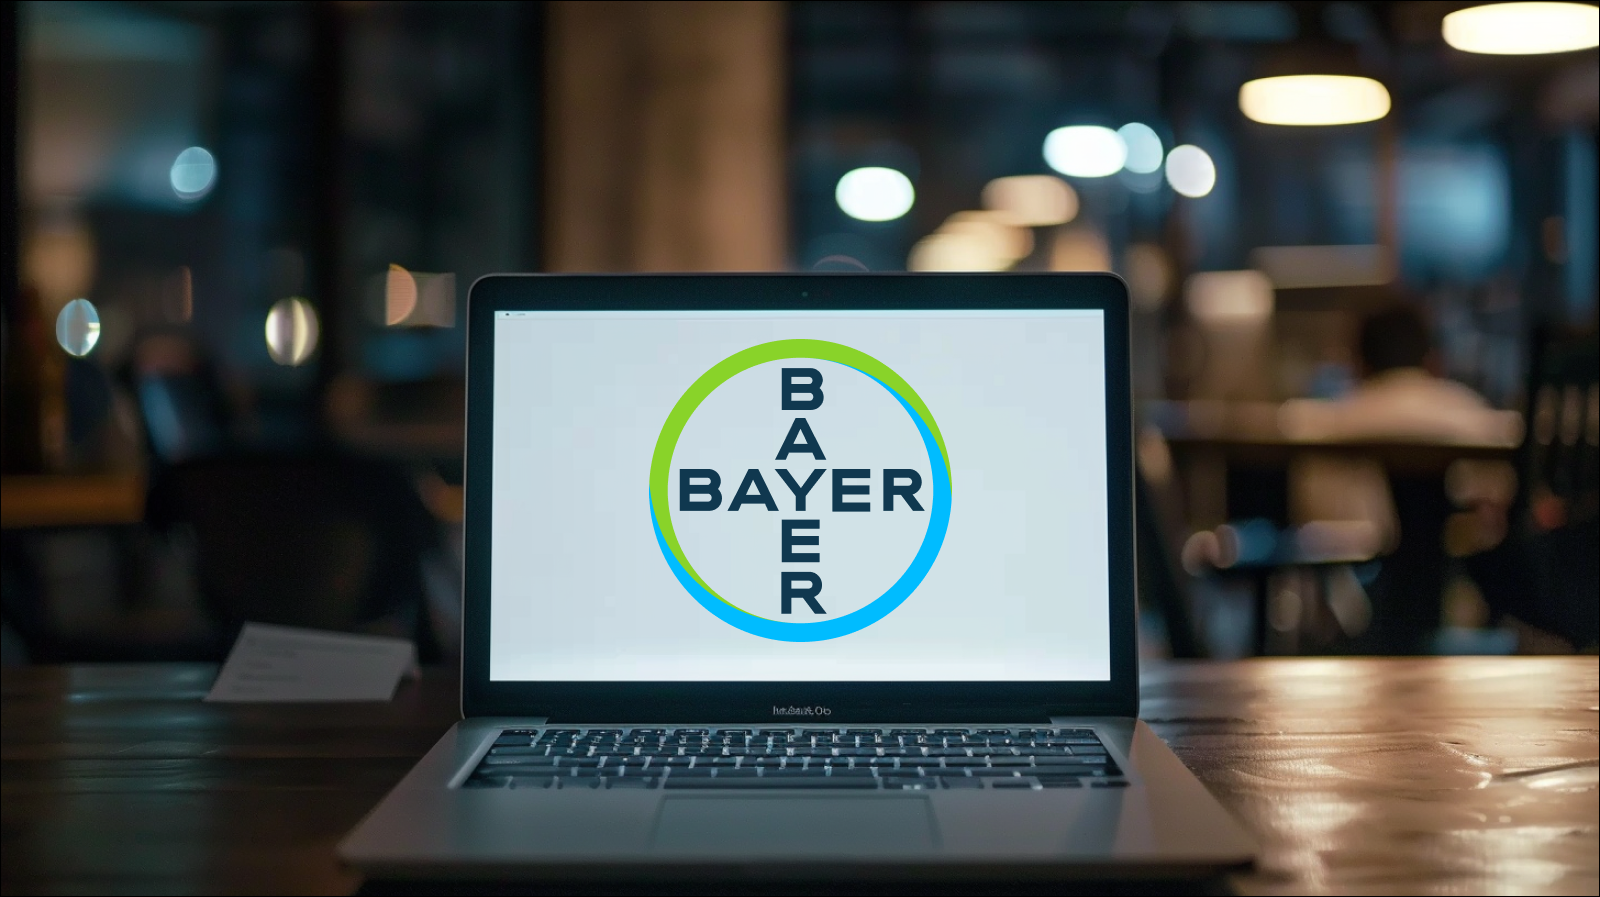 Ein Laptop steht auf einem Tisch, auf dem Bildschirm ist deutlich das Logo von Bayer zu sehen.